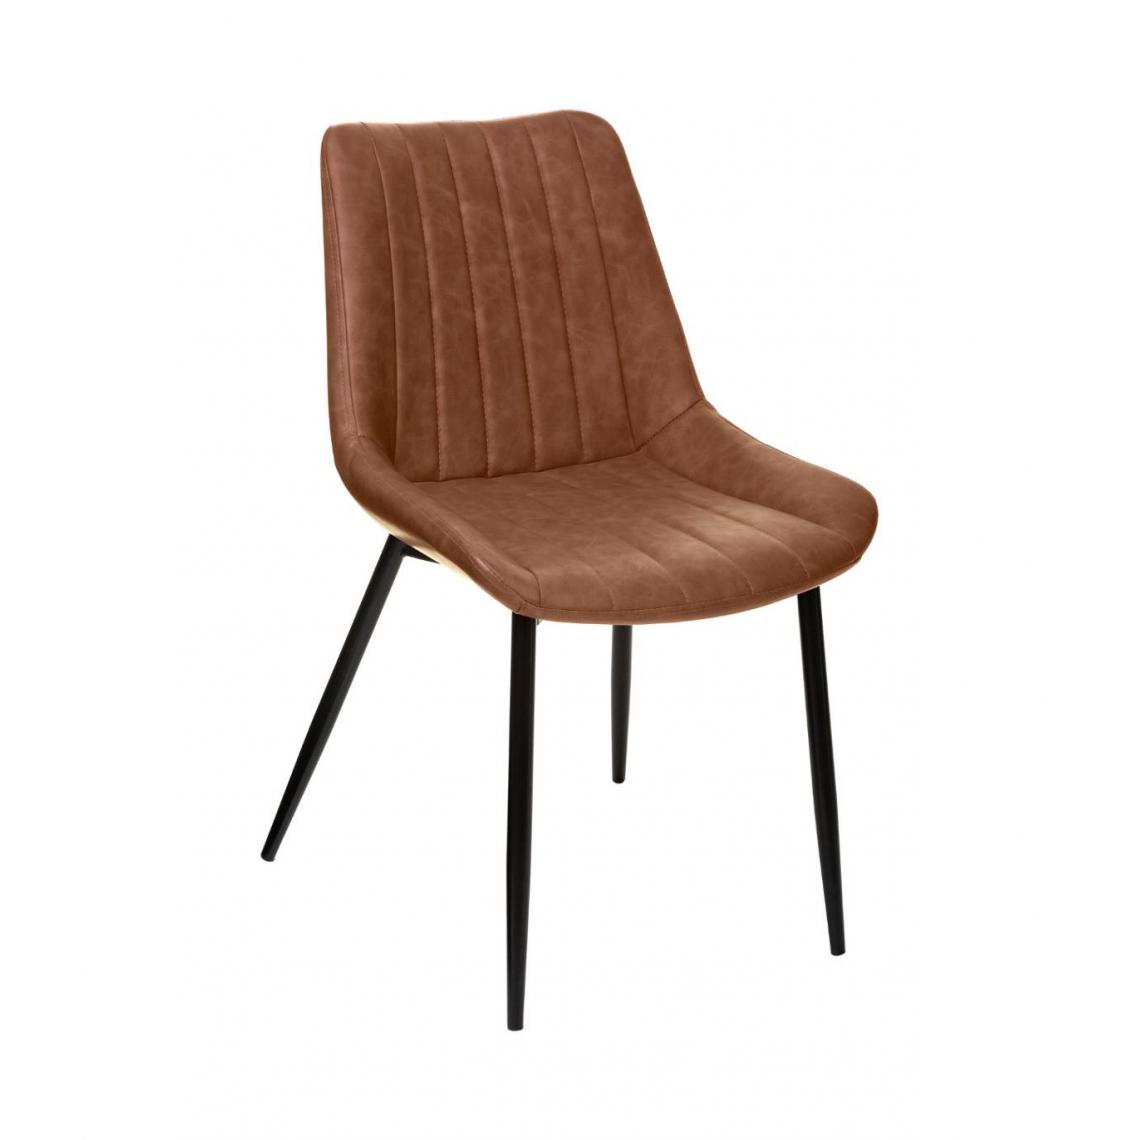 Atmosphera, Createur D'Interieur - Atmosphera - Chaise de table Assise Marron Cognac effet Cuir et pieds en métal - Chaises